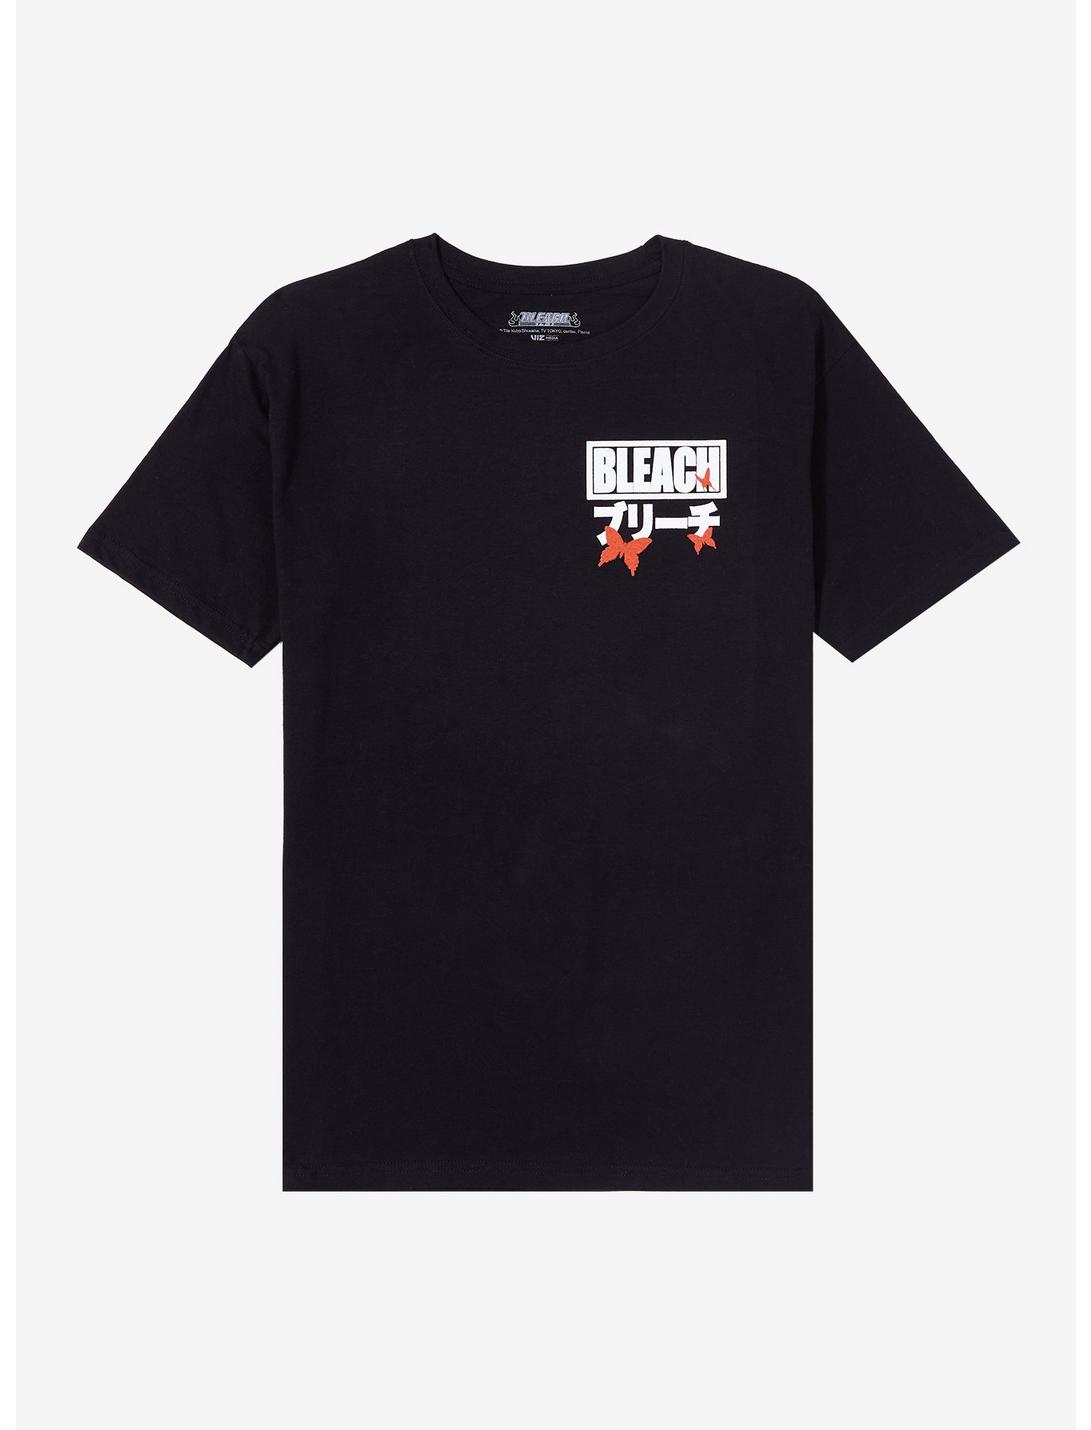 BLEACH Arrancar Arc Group Double-Sided T-Shirt, BLACK, hi-res